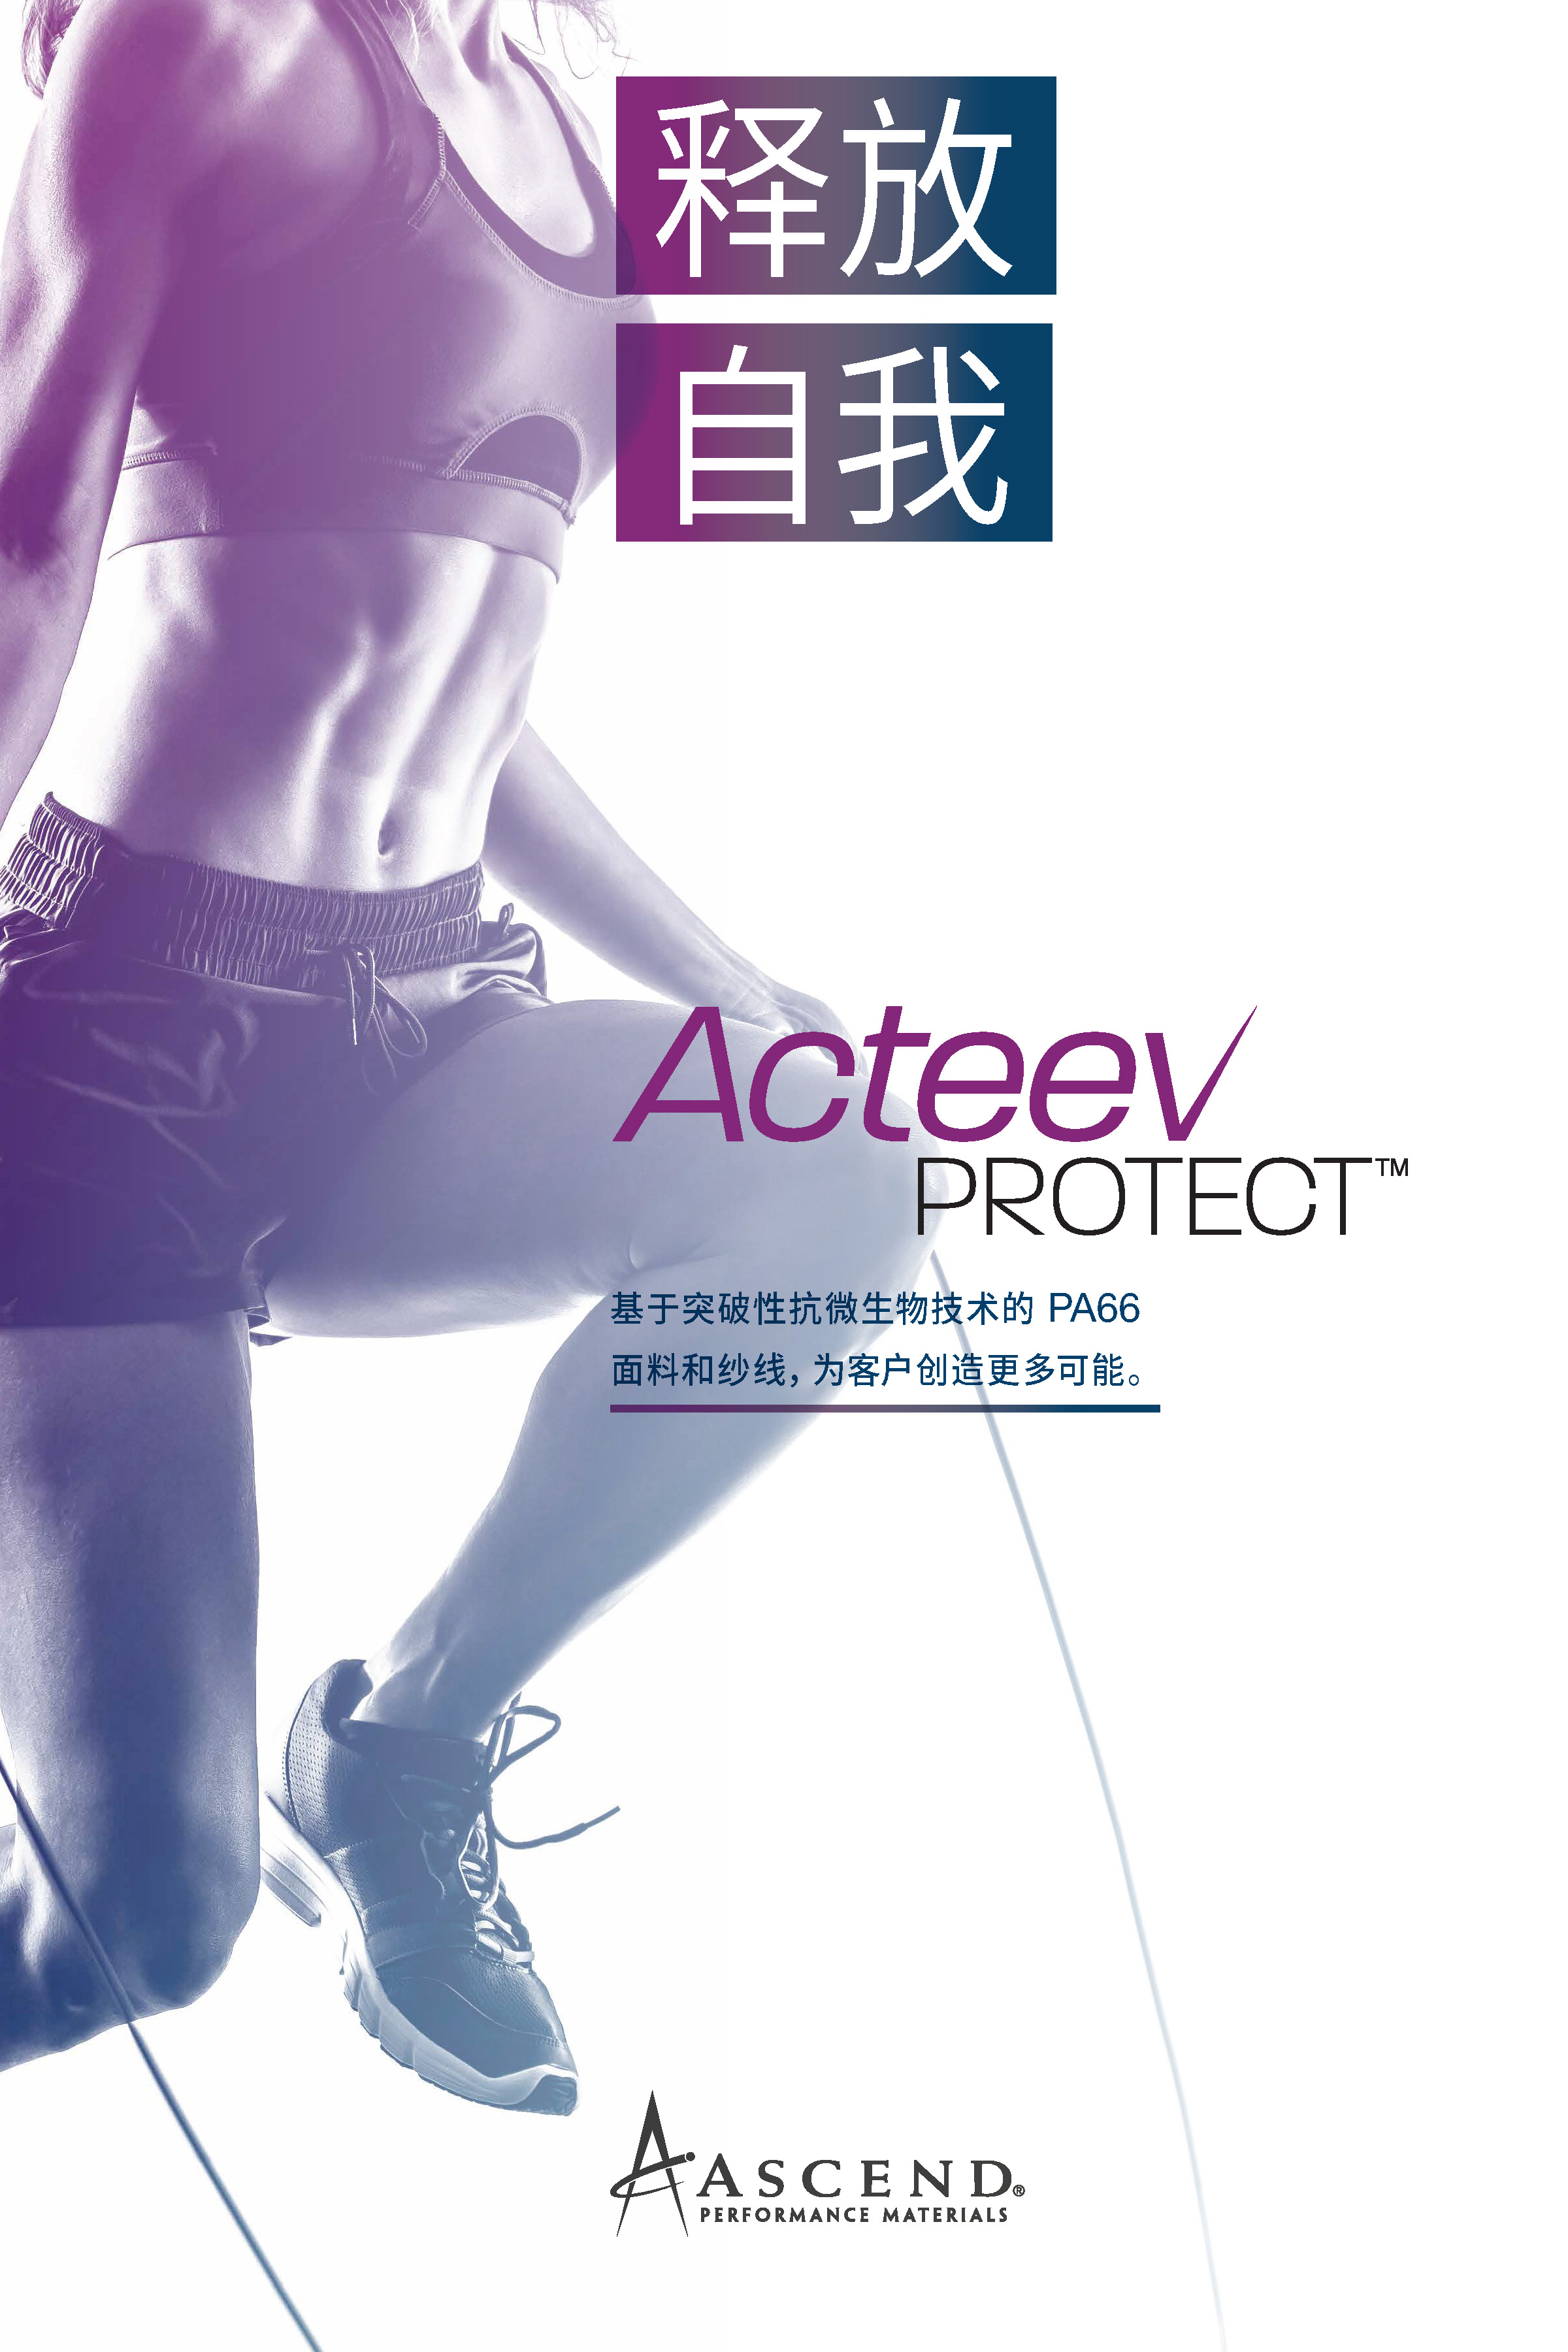 Acteev Protect™ 面料和纱线